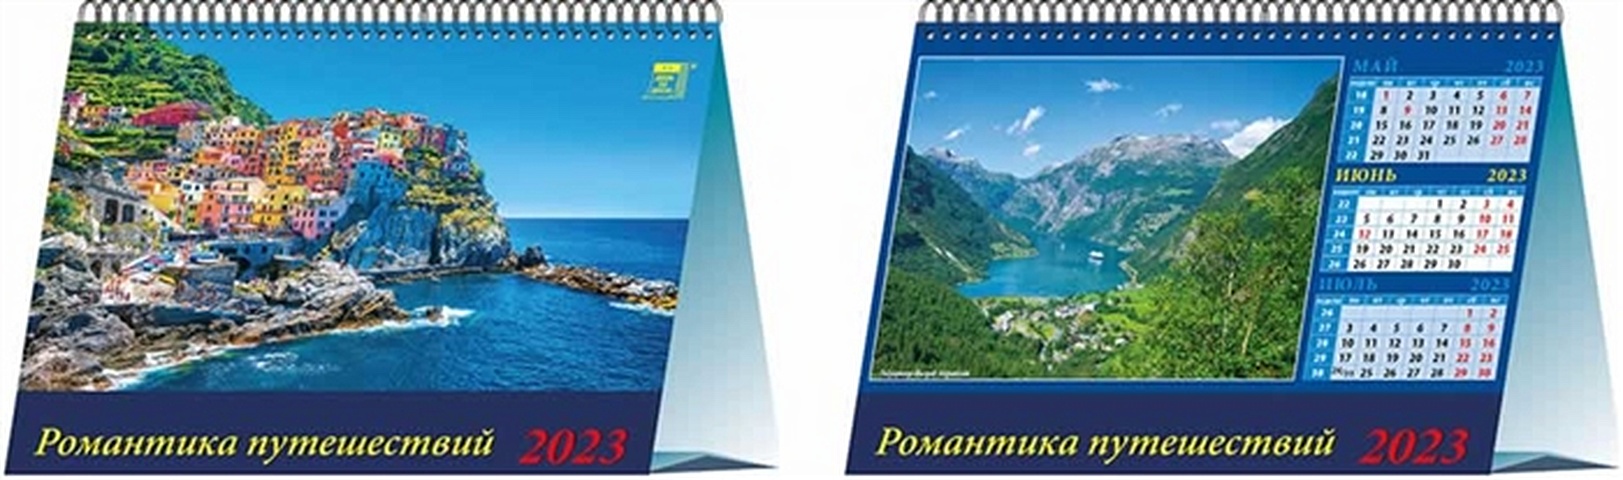 Календарь настольный на 2023 год Романтика путешествий